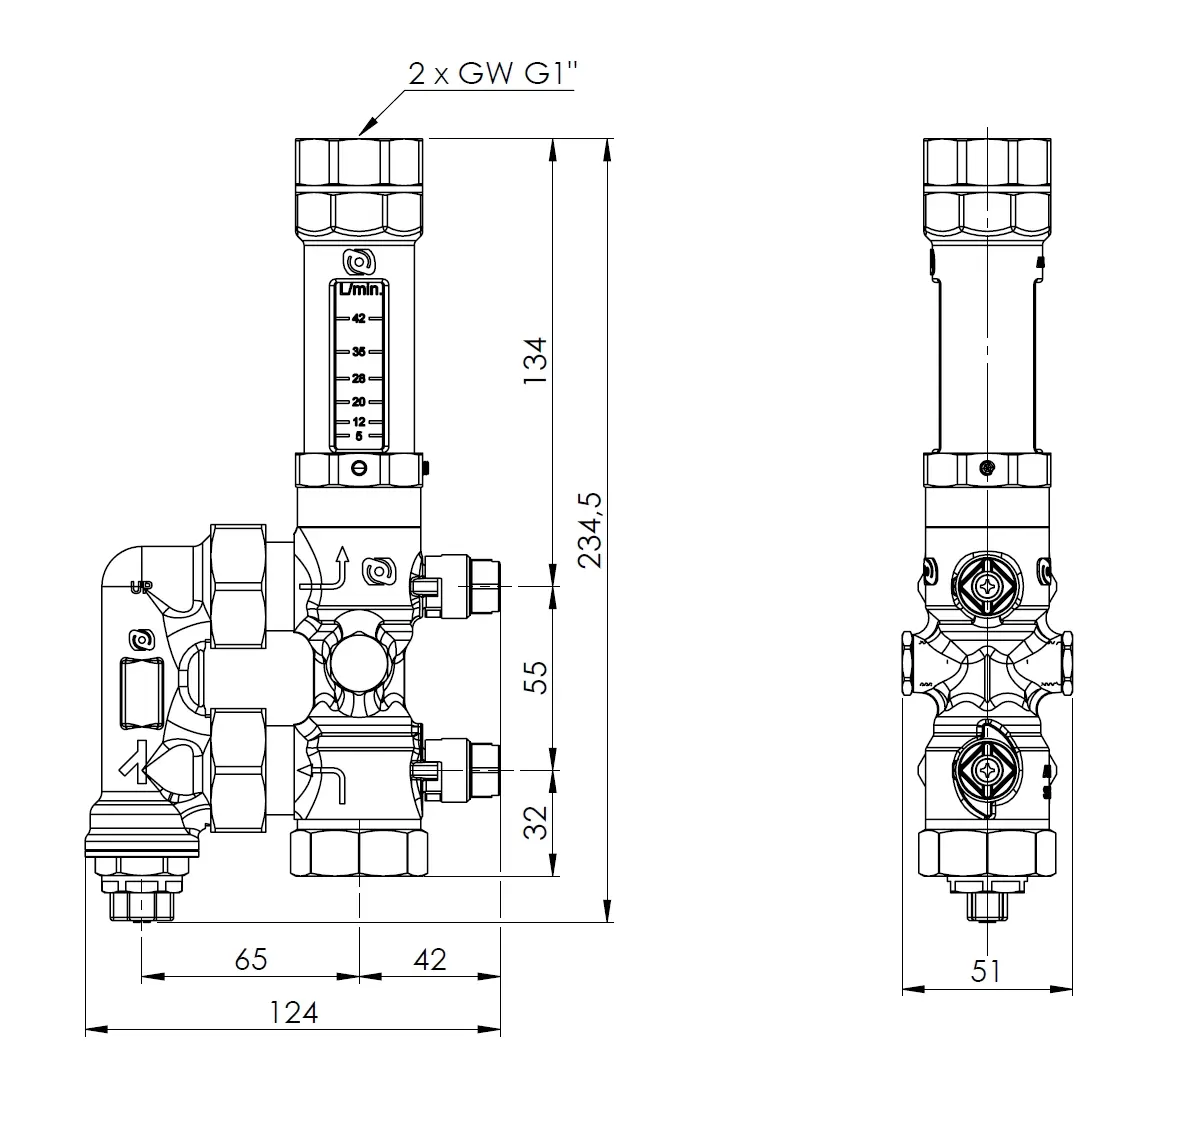 Zespół armatury serwisowej AHS 500 do pomp ciepła, z filtrem siatkowym, z przepływomierzem 5÷42 l/min, przyłącza GW G1" - budowa